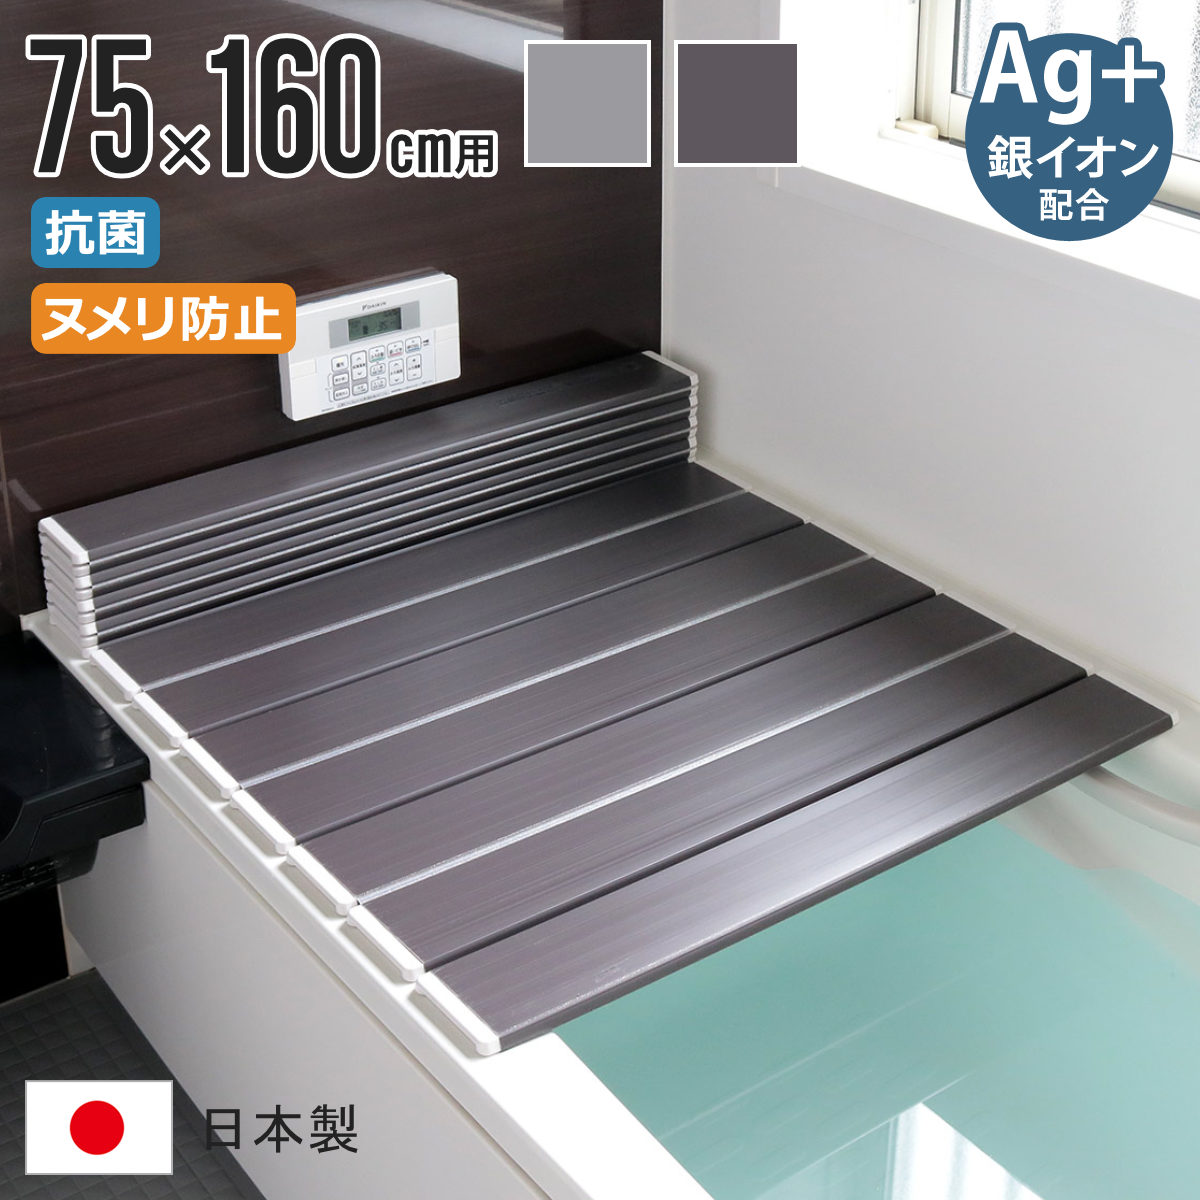 風呂ふた 折りたたみ式 L-16 75×160cm Ag銀イオン 防カビ 日本製